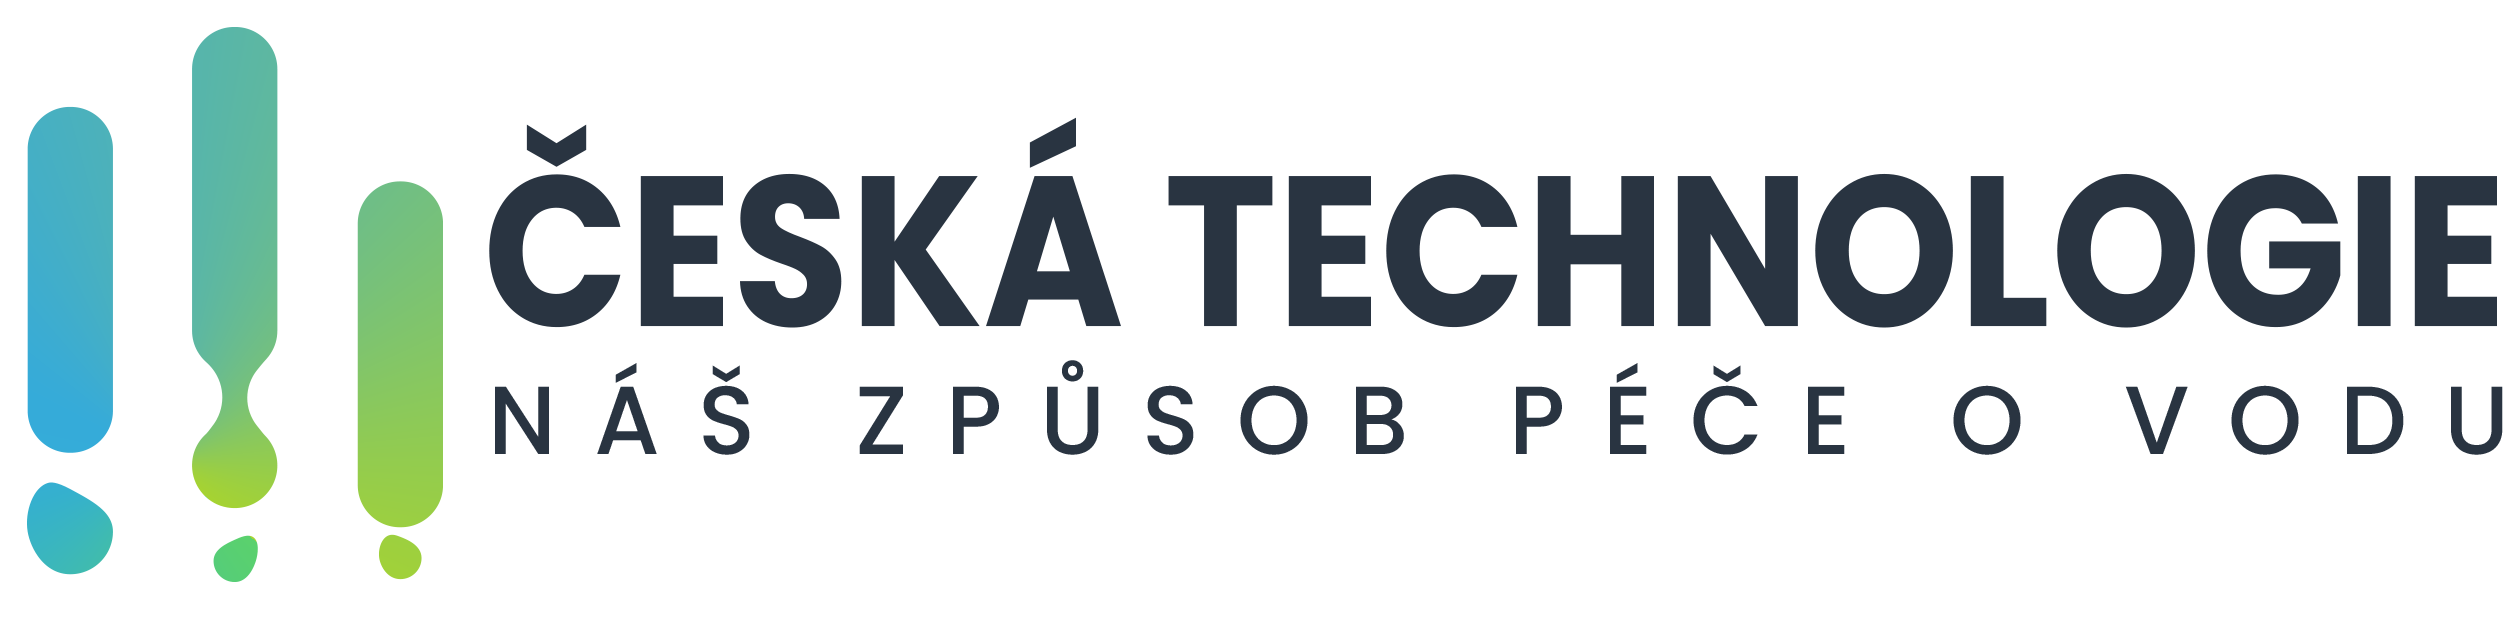 Czech technology